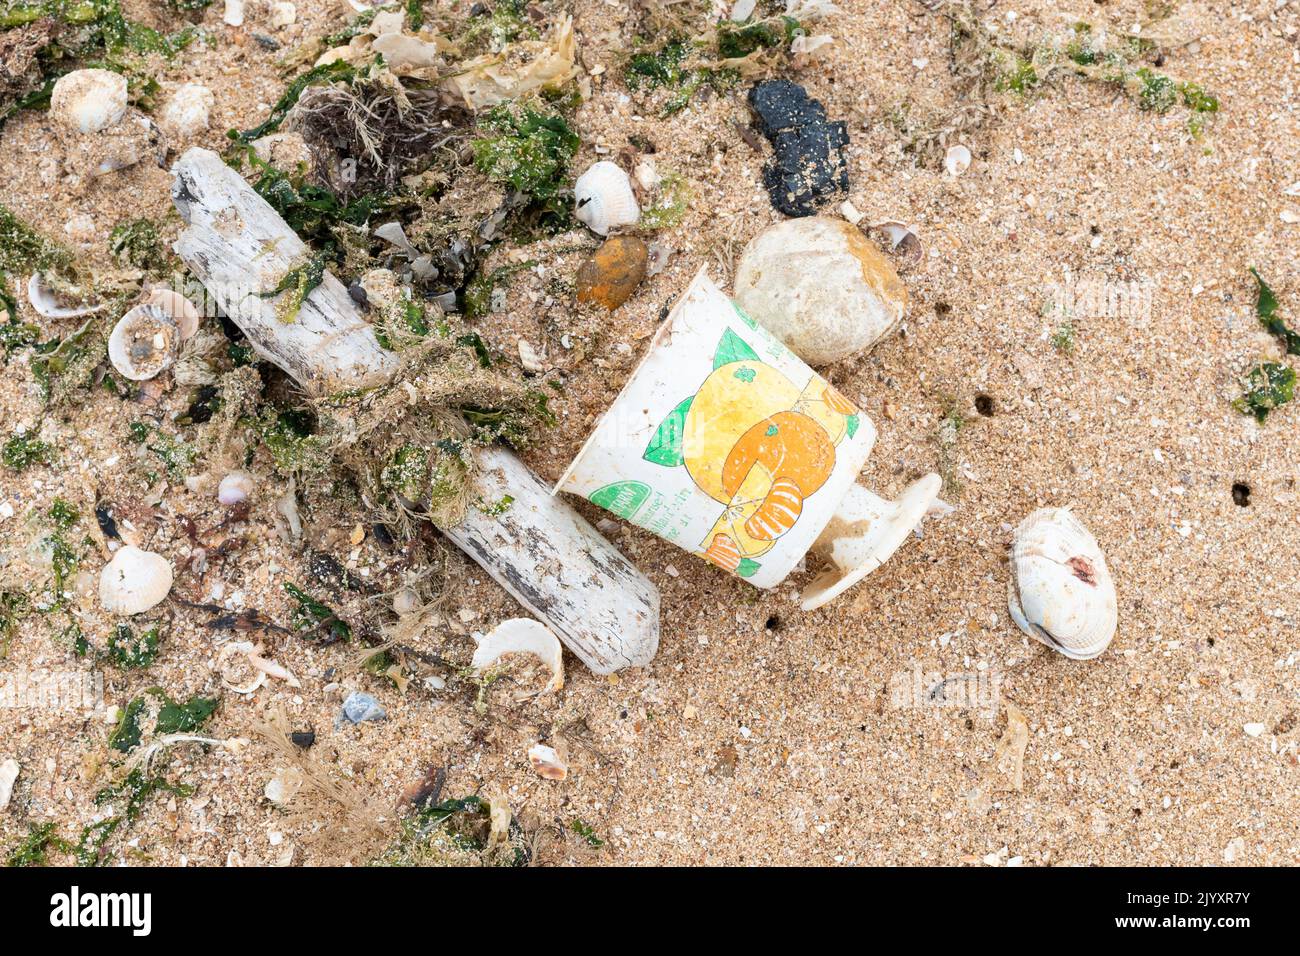 Pollution plastique royaume-uni - emballage alimentaire en plastique à usage unique lavé sur la plage - Pot de yaourt de ferme de plusieurs décennies trouvé sur la plage en 2022 - Angleterre, Banque D'Images